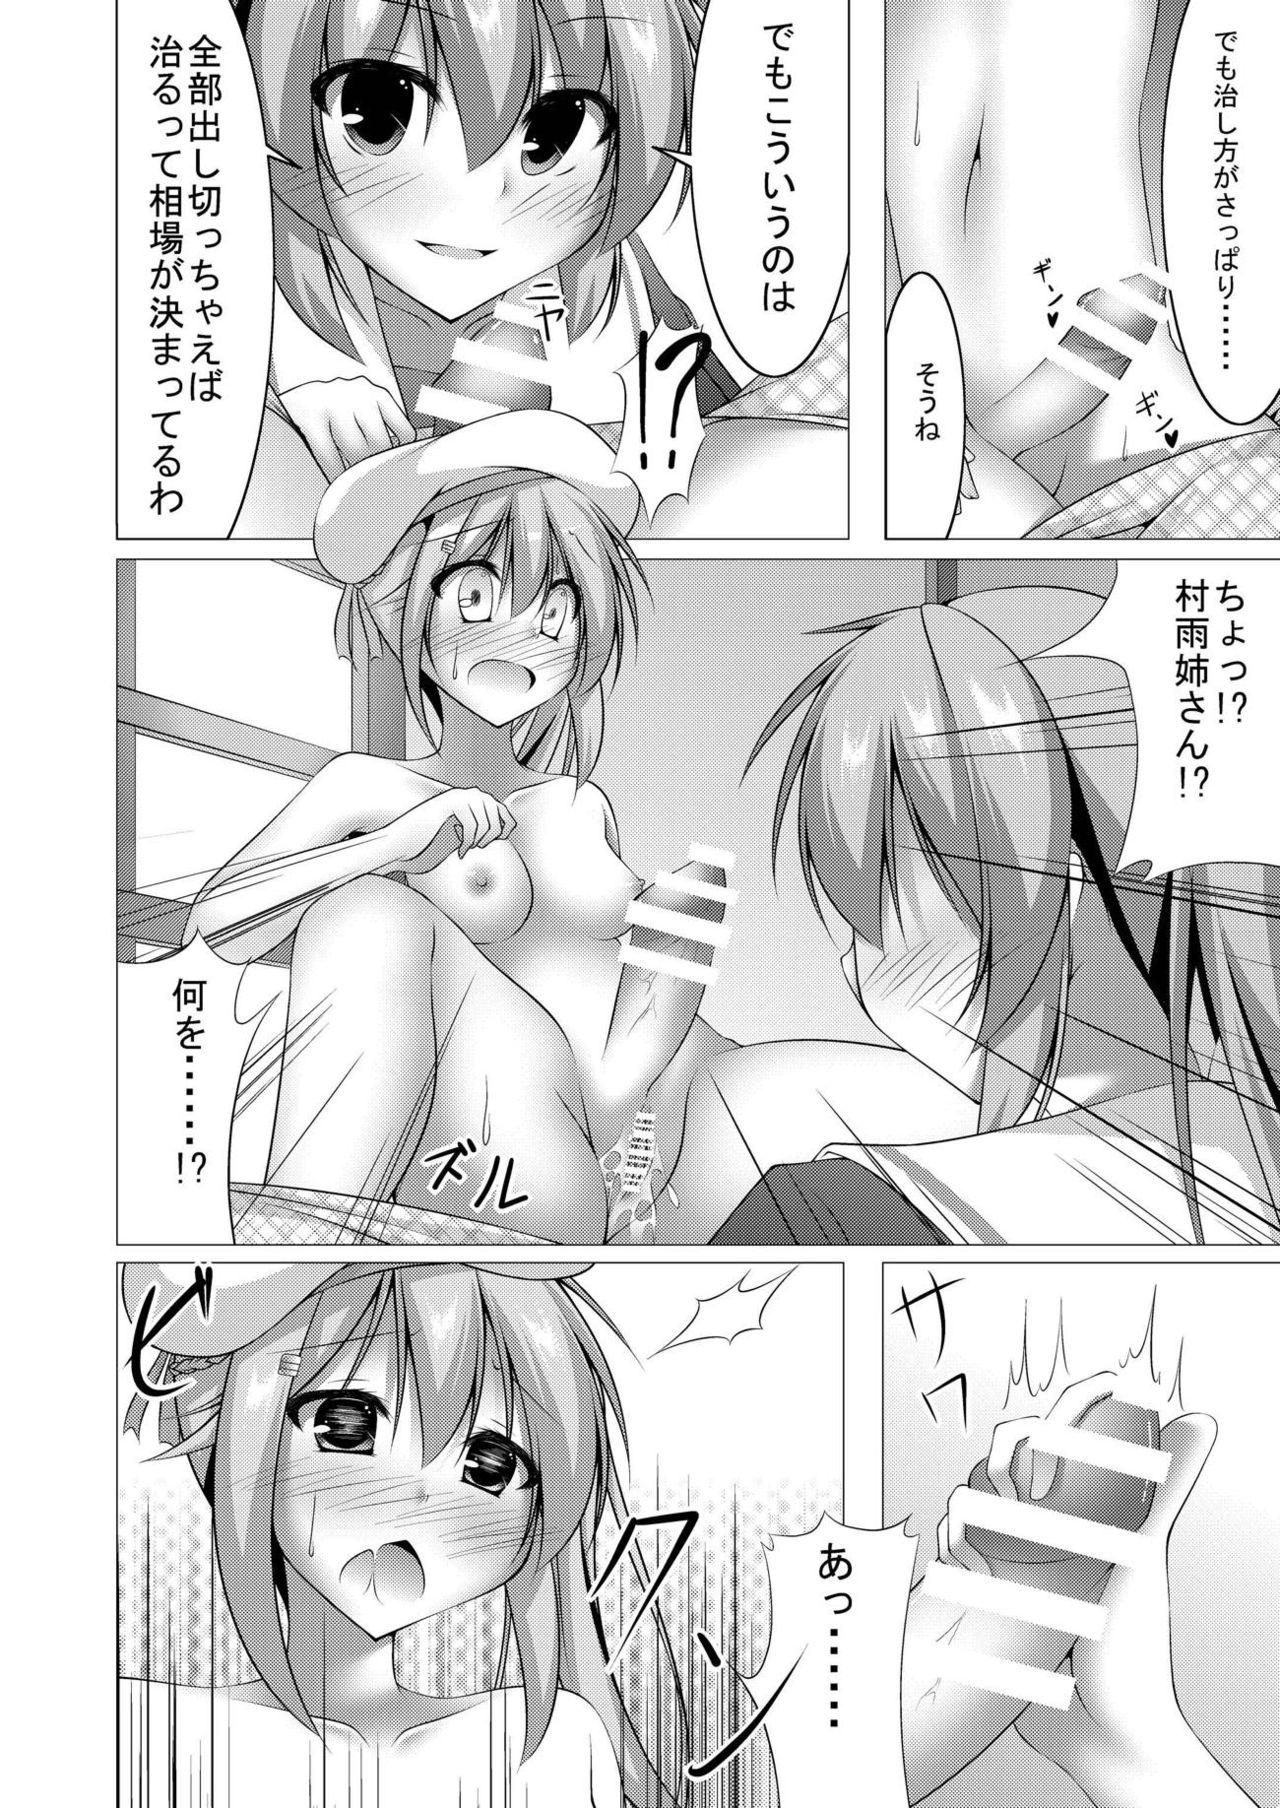 Erotic Ara Ara, Watashi ni Nani no Soudan kashiraa? - Kantai collection Fetish - Page 9